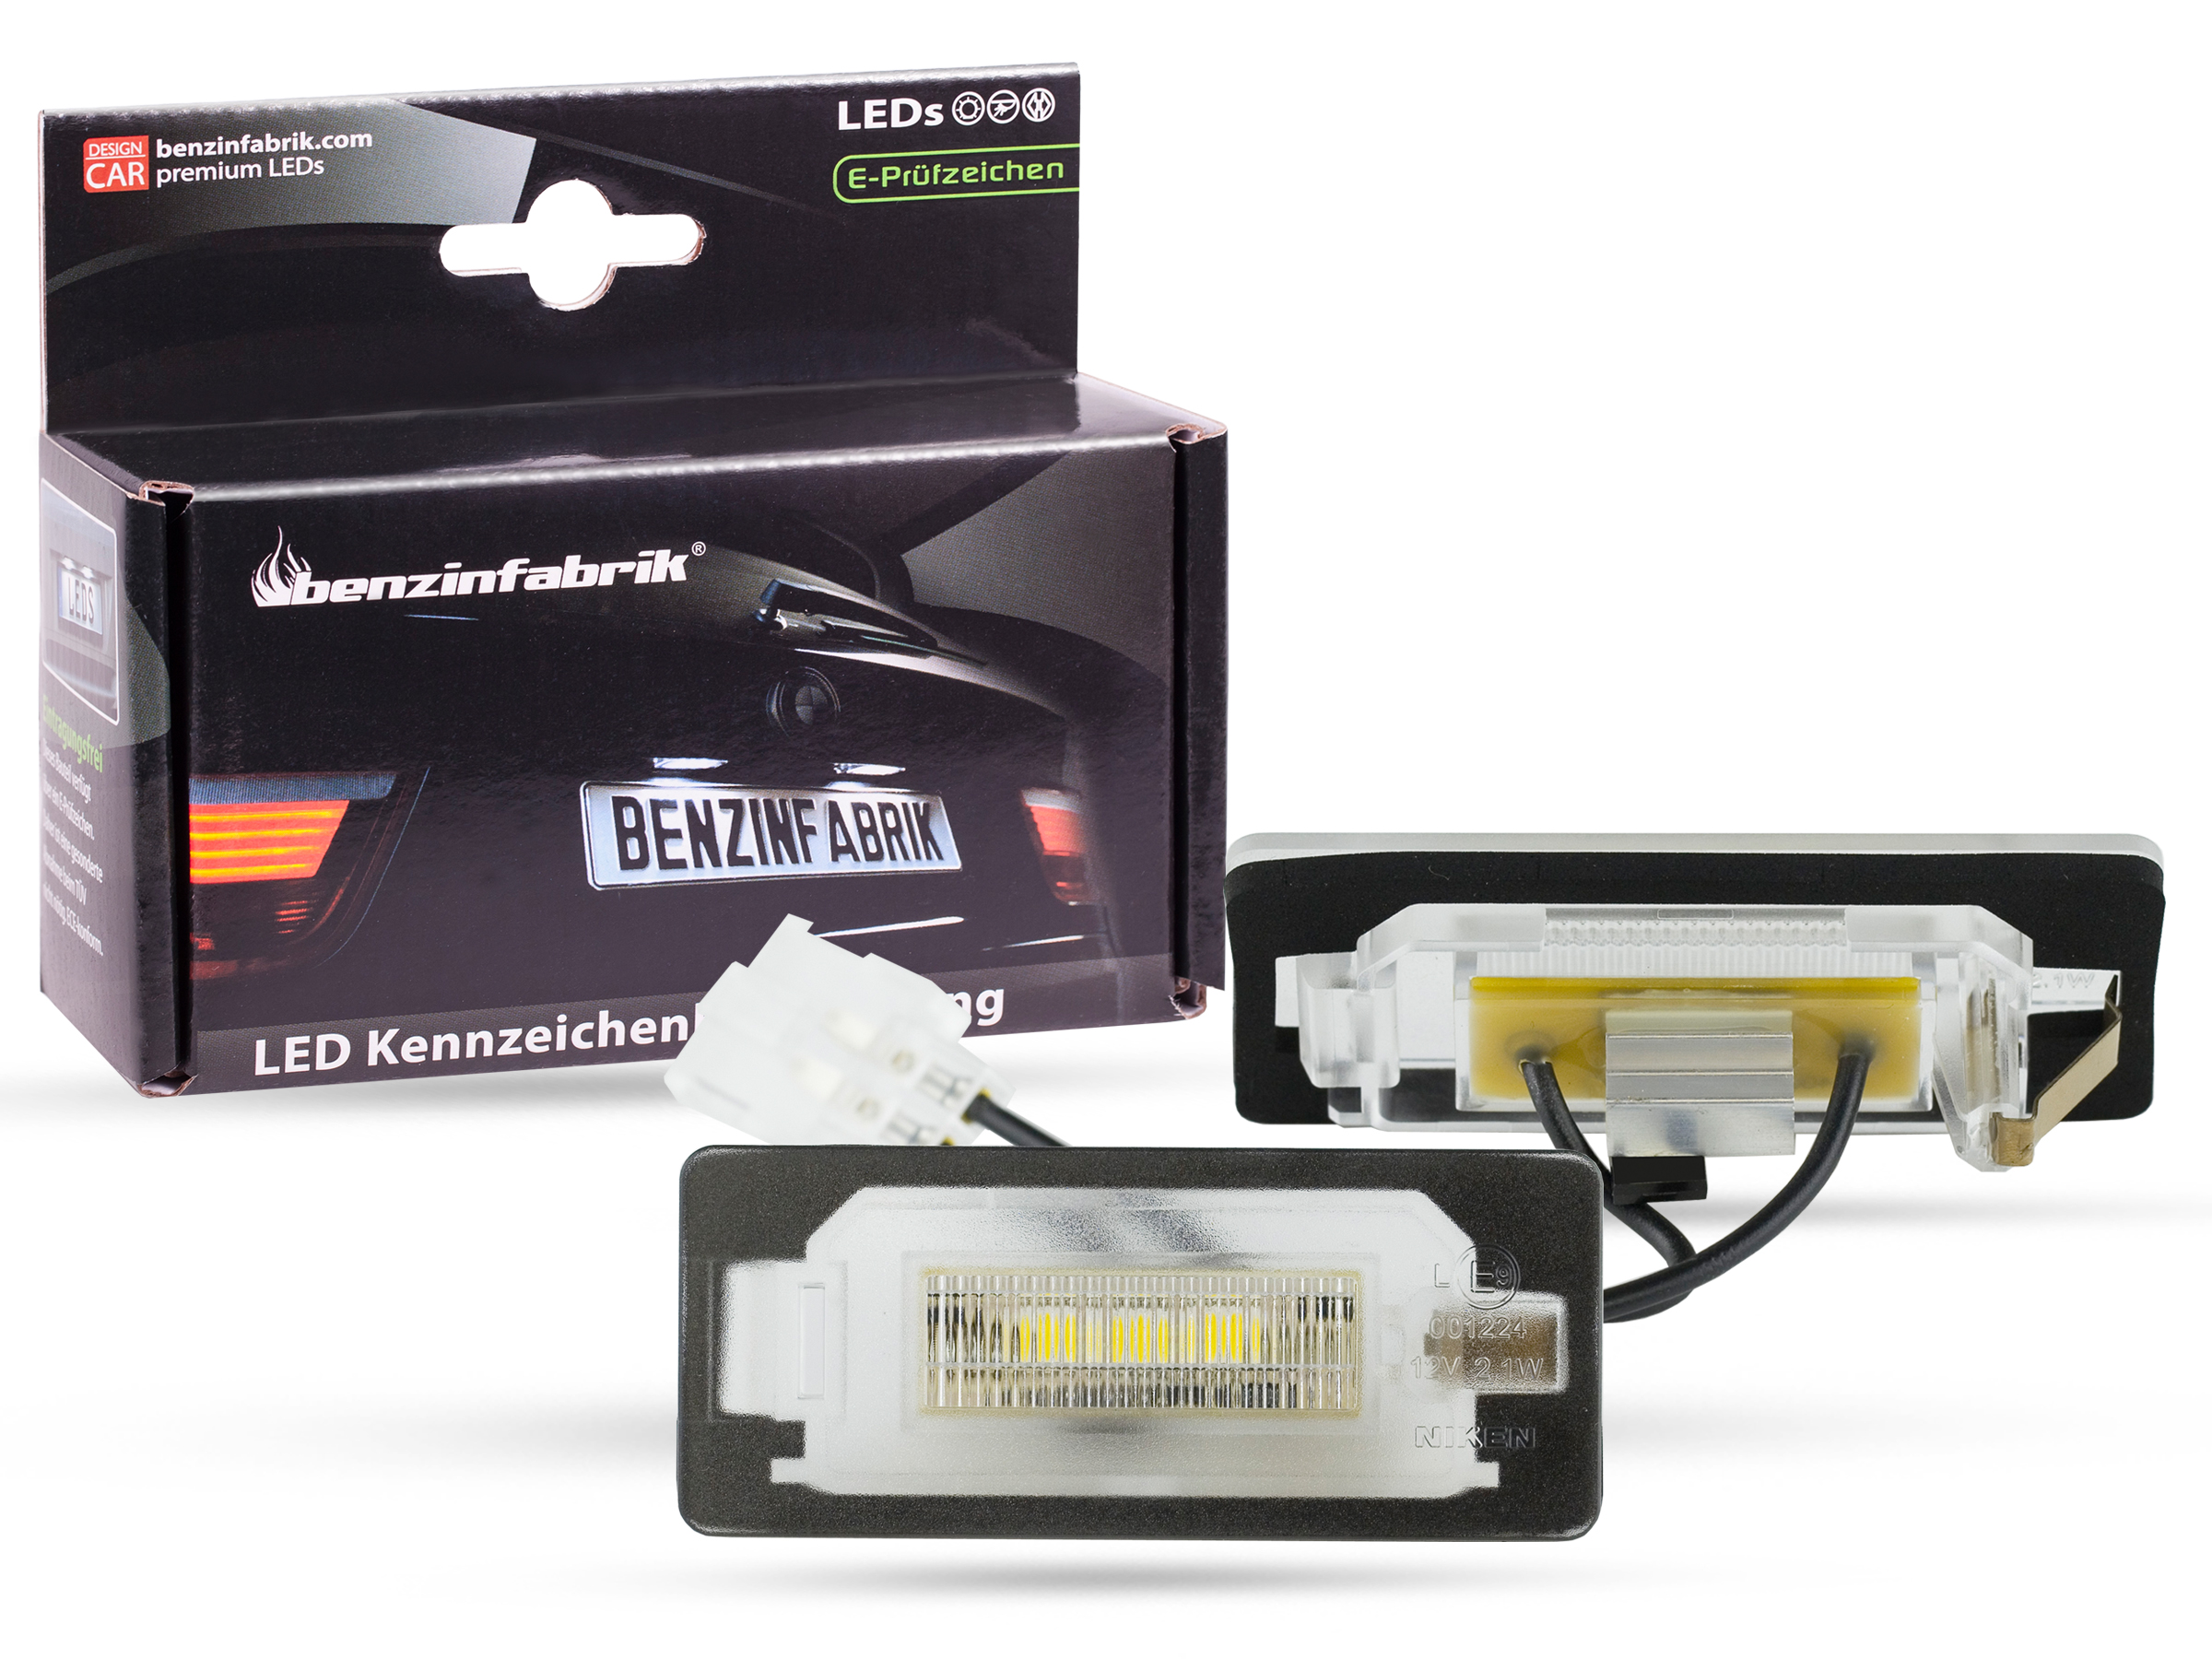 LED Kennzeichenbeleuchtung Module VW Golf 6 Variant, mit E-Prüfzeichen, LED  Kennzeichenbeleuchtung für VW, LED Kennzeichenbeleuchtung